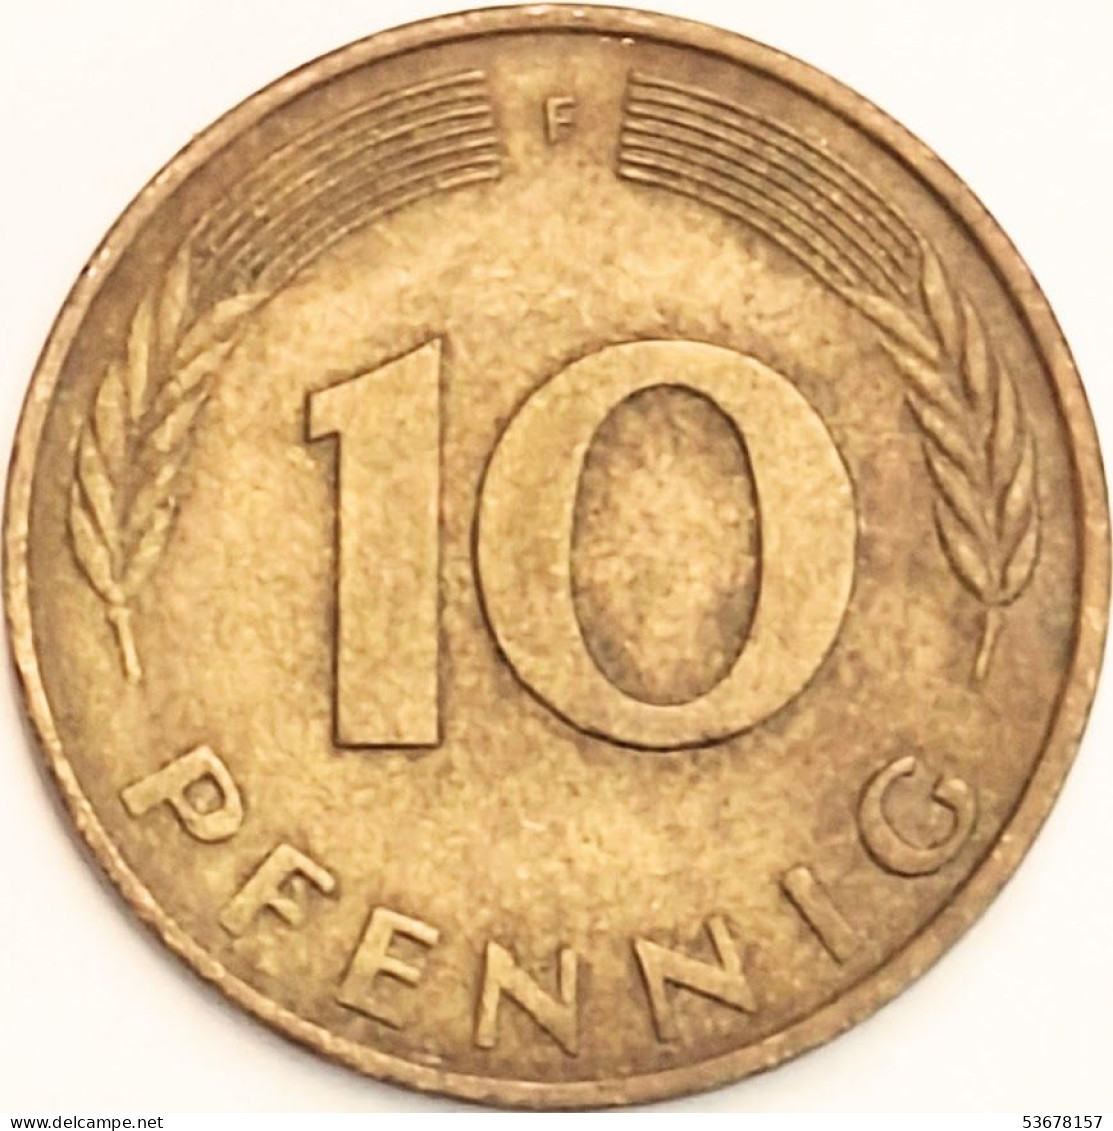 Germany Federal Republic - 10 Pfennig 1979 F, KM# 108 (#4664) - 10 Pfennig